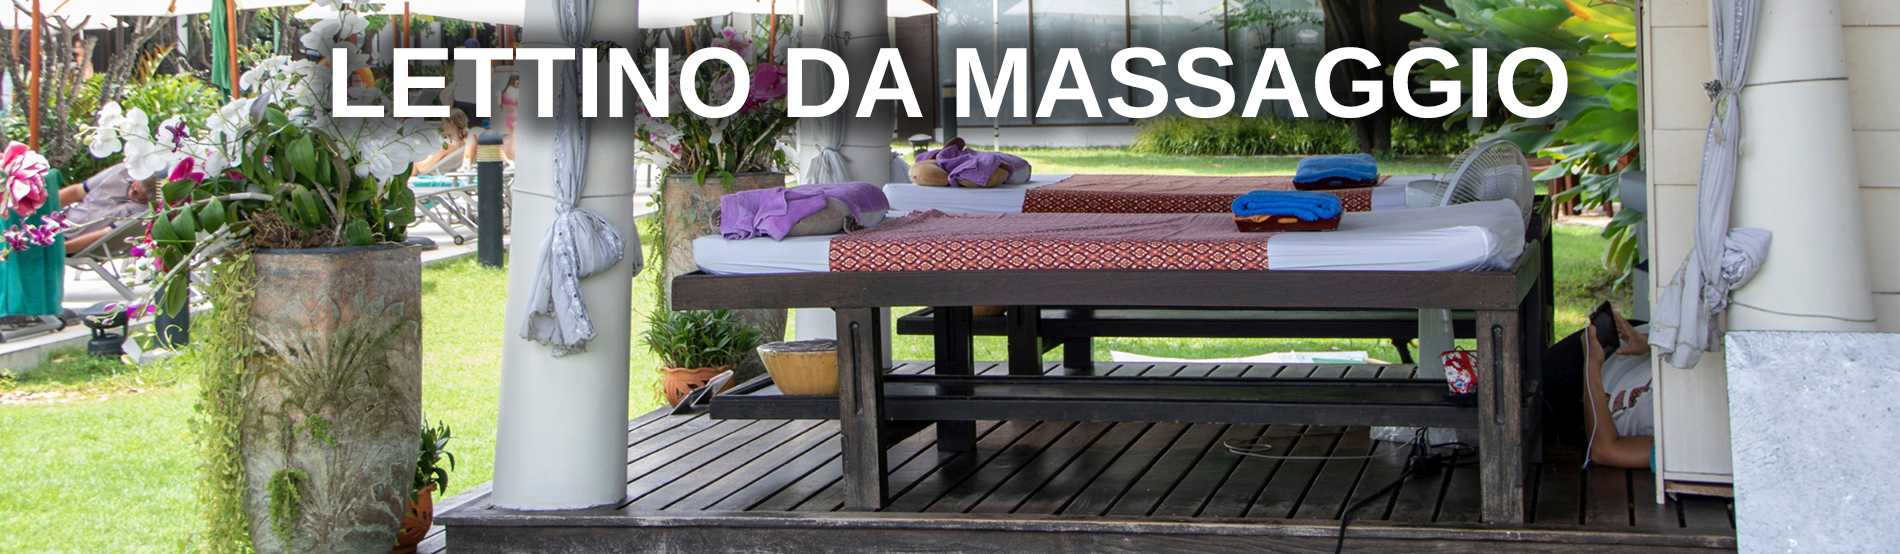 Lettino da massaggio panca letto per massaggio thai